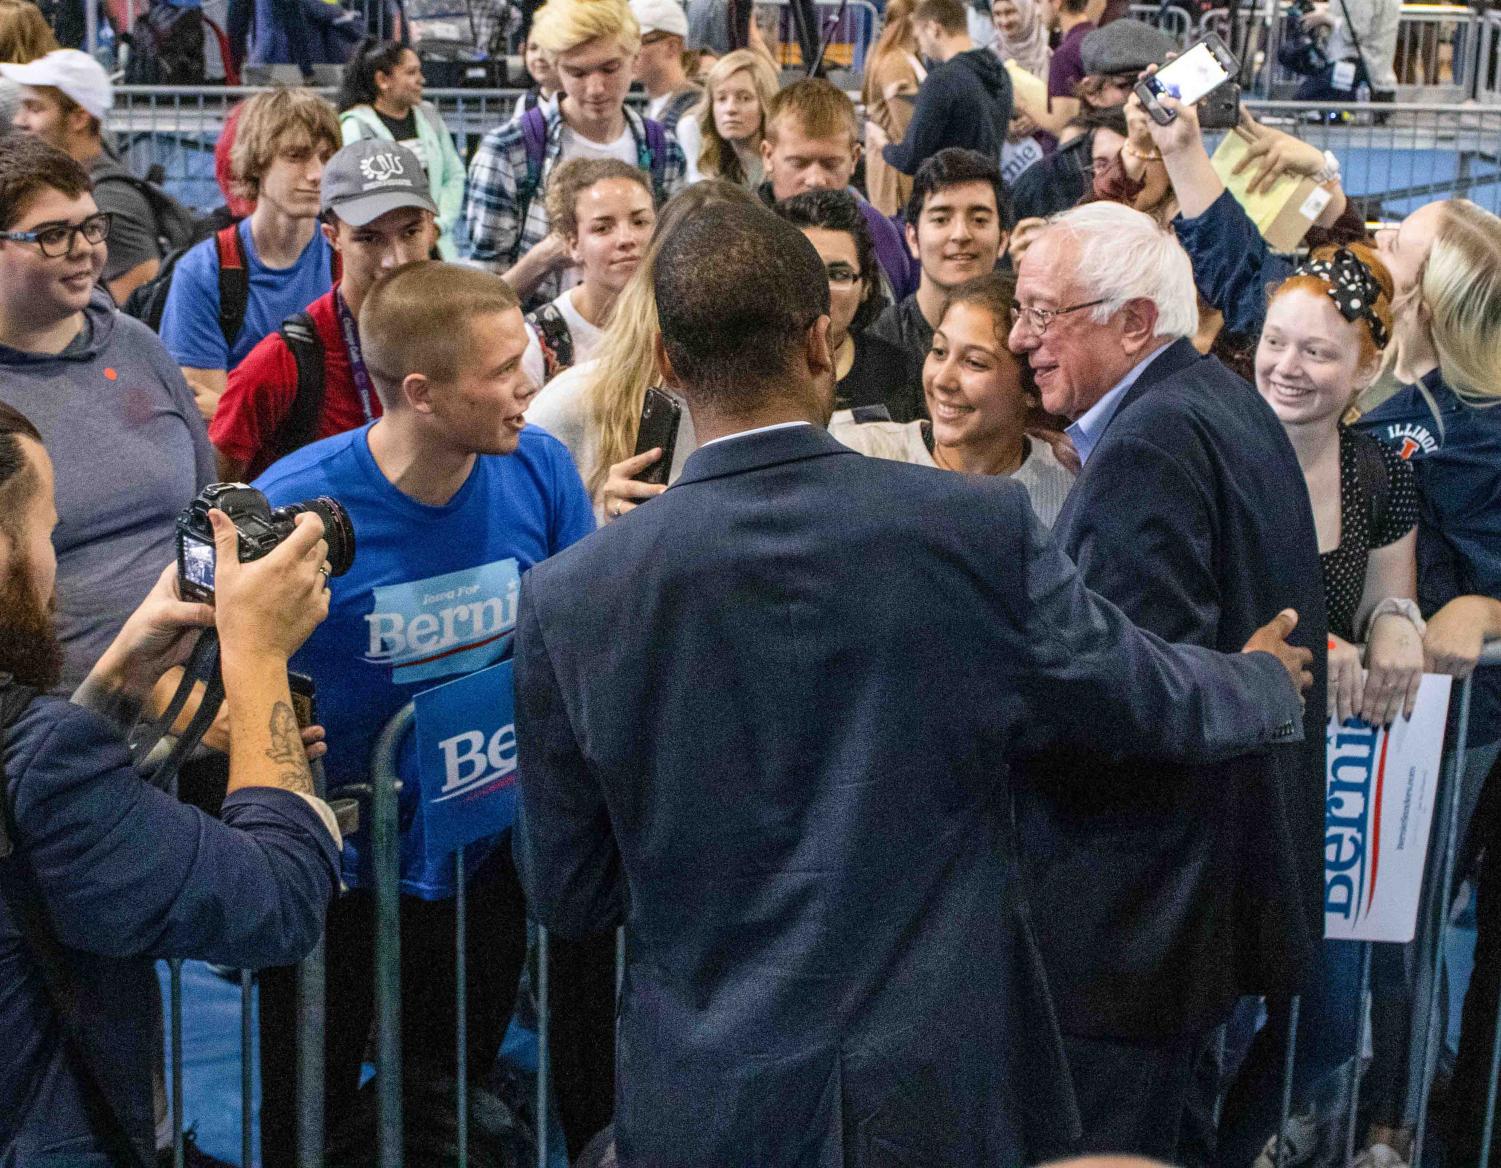 Bernie+Sanders+rallies+in+West+Gym